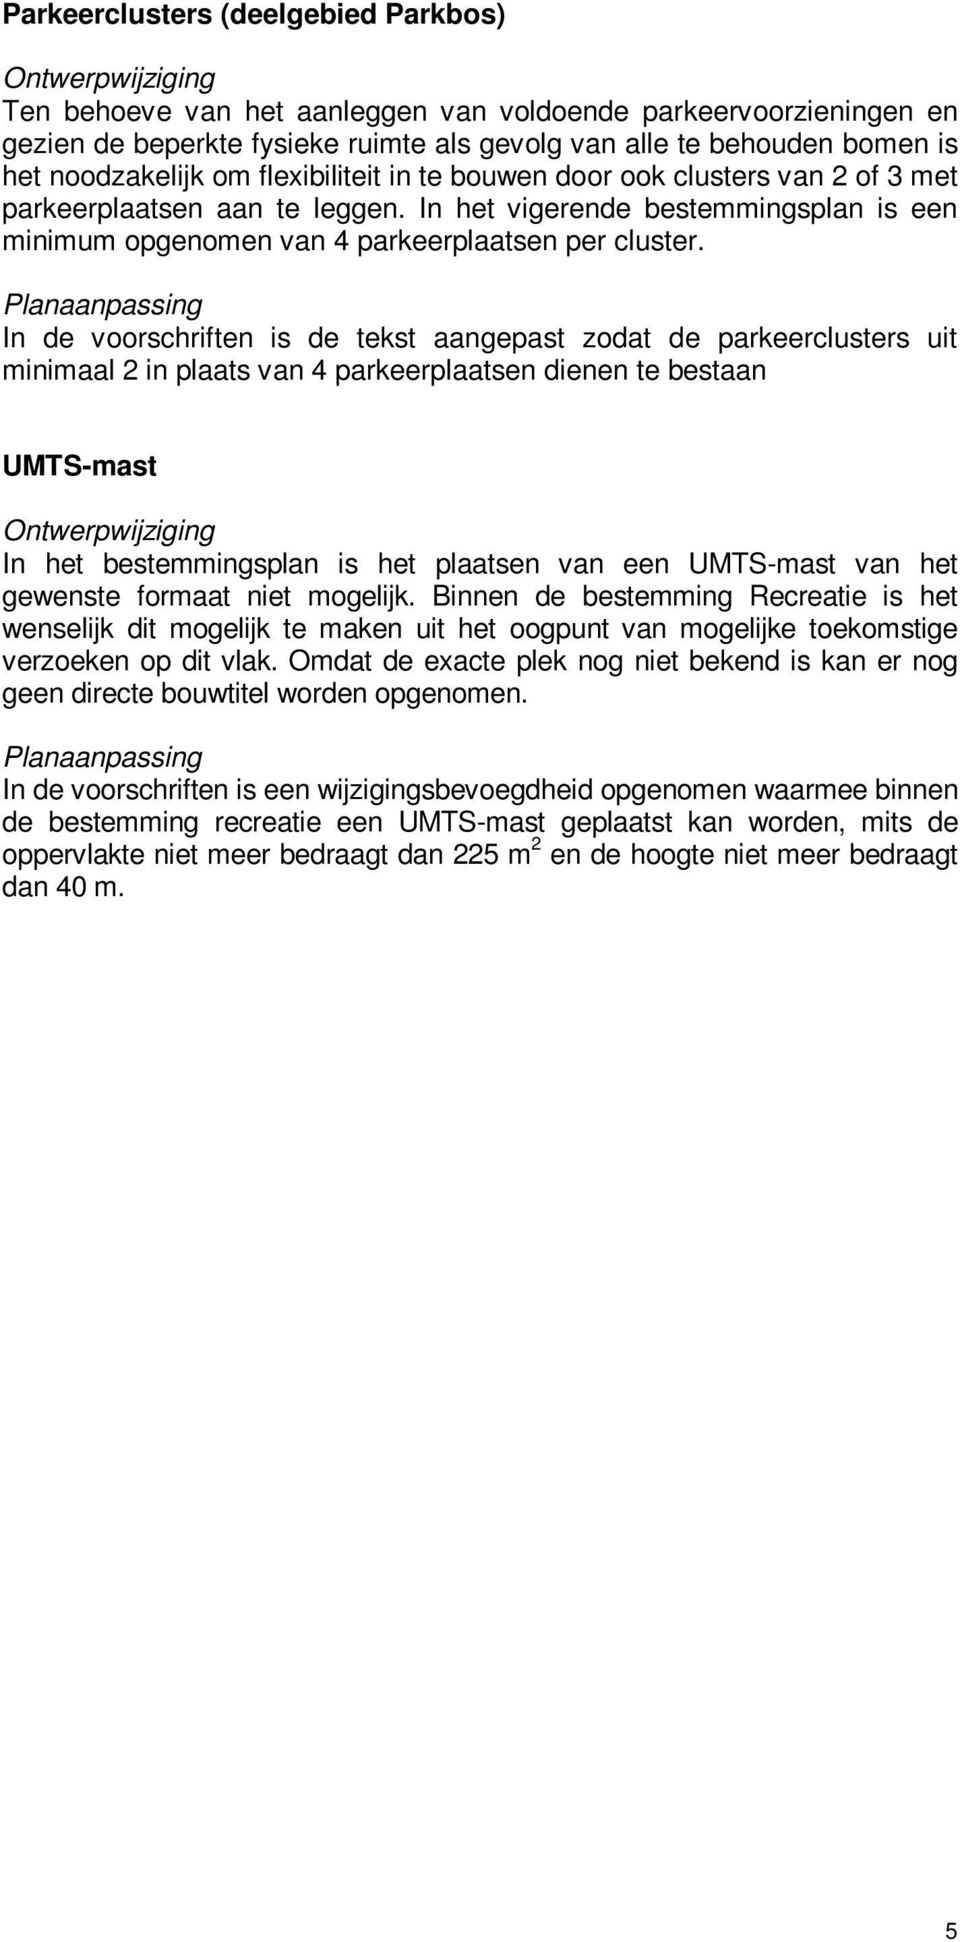 In de voorschriften is de tekst aangepast zodat de parkeerclusters uit minimaal 2 in plaats van 4 parkeerplaatsen dienen te bestaan UMTS-mast In het bestemmingsplan is het plaatsen van een UMTS-mast